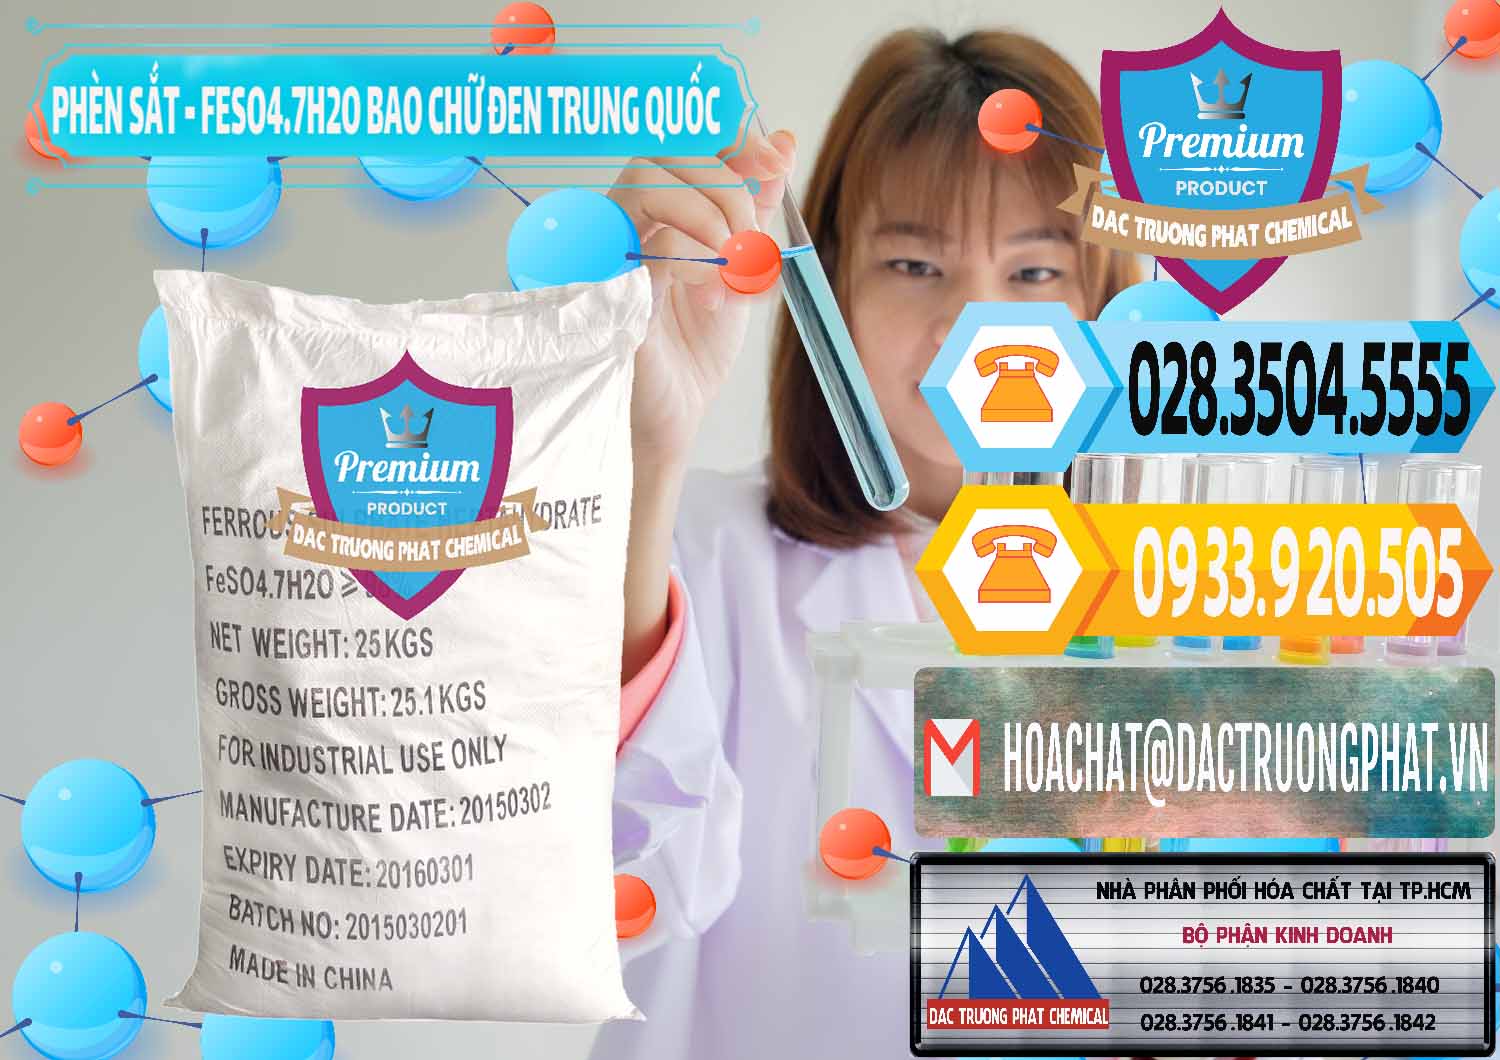 Nhà nhập khẩu & bán Phèn Sắt - FeSO4.7H2O Bao Chữ Đen Trung Quốc China - 0234 - Công ty bán _ phân phối hóa chất tại TP.HCM - hoachattayrua.net